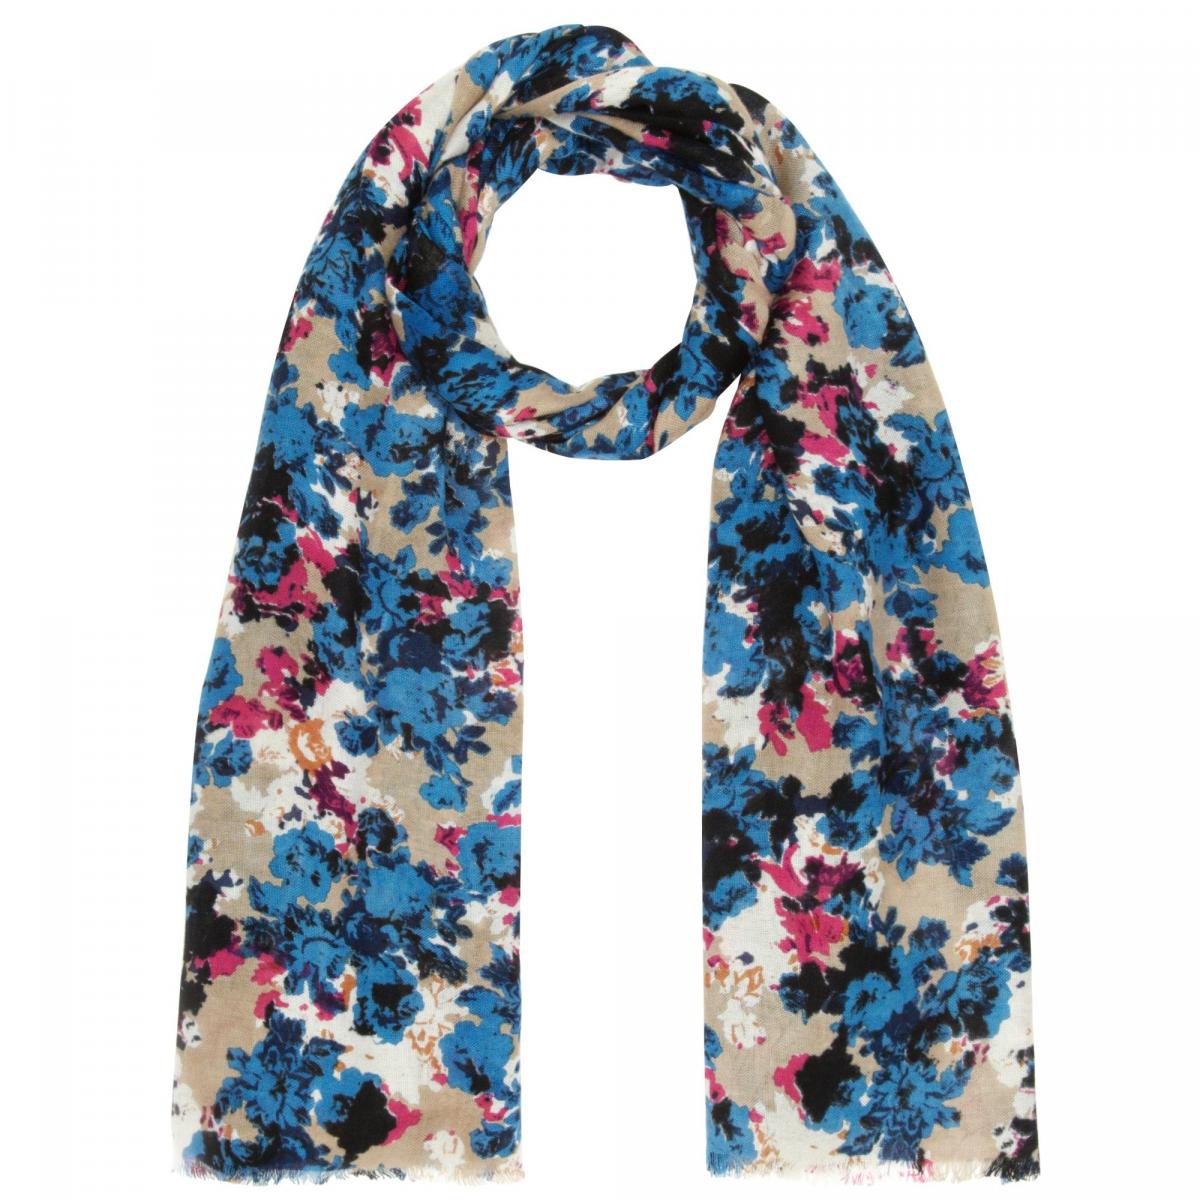 John Lewis,
Sara floral scarf, blue, £35